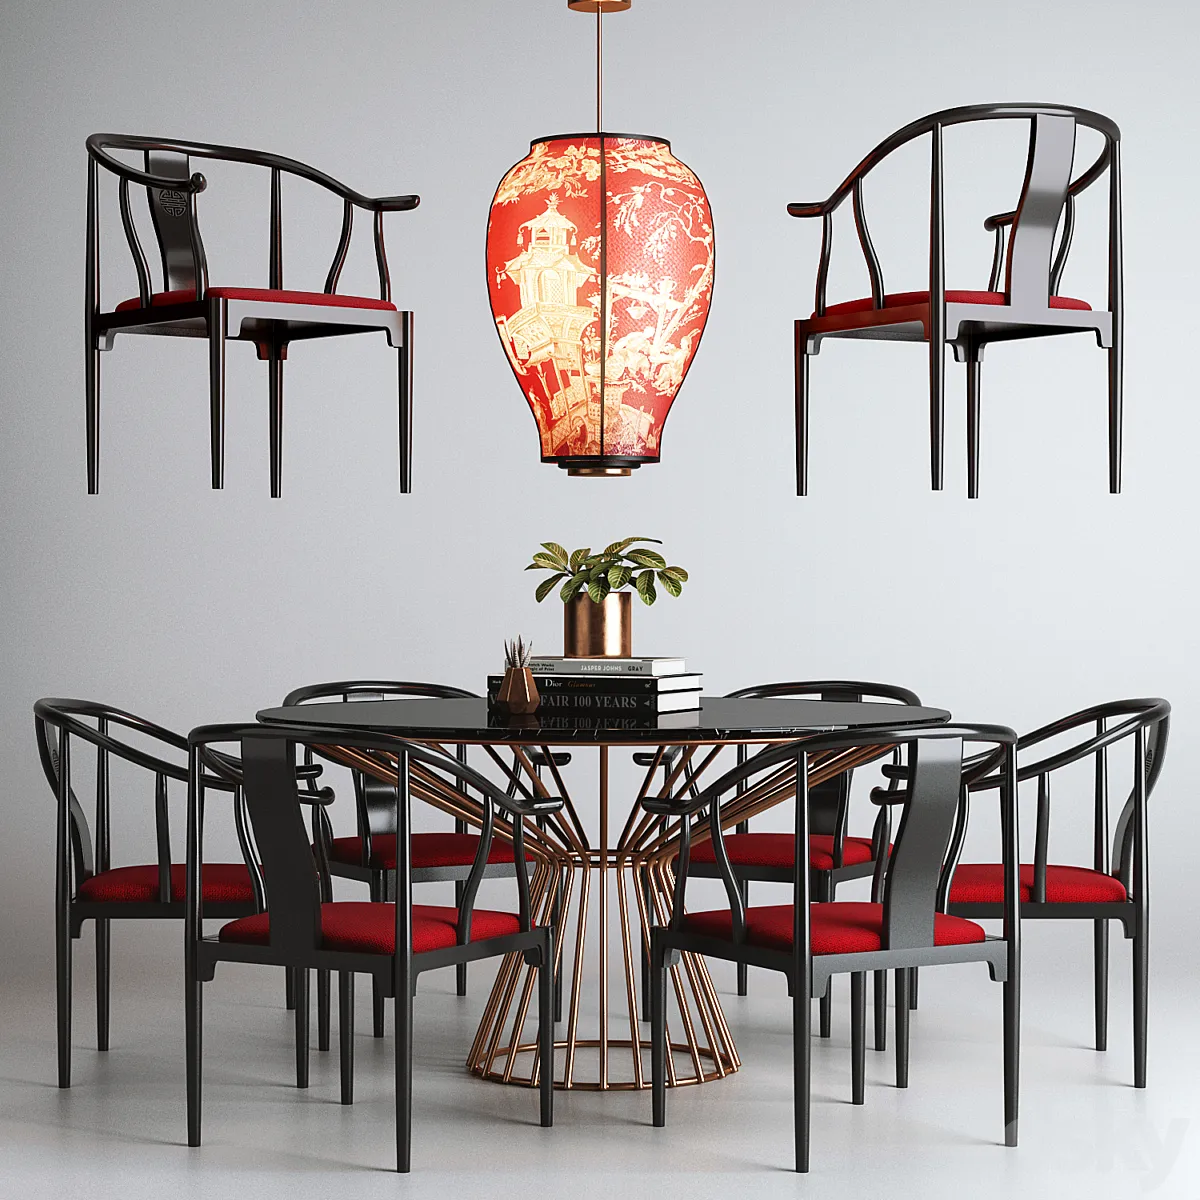 مدل سه بعدی میز و صندلی و روشنایی چینی تری دی مکس + ویری Asian Set 01